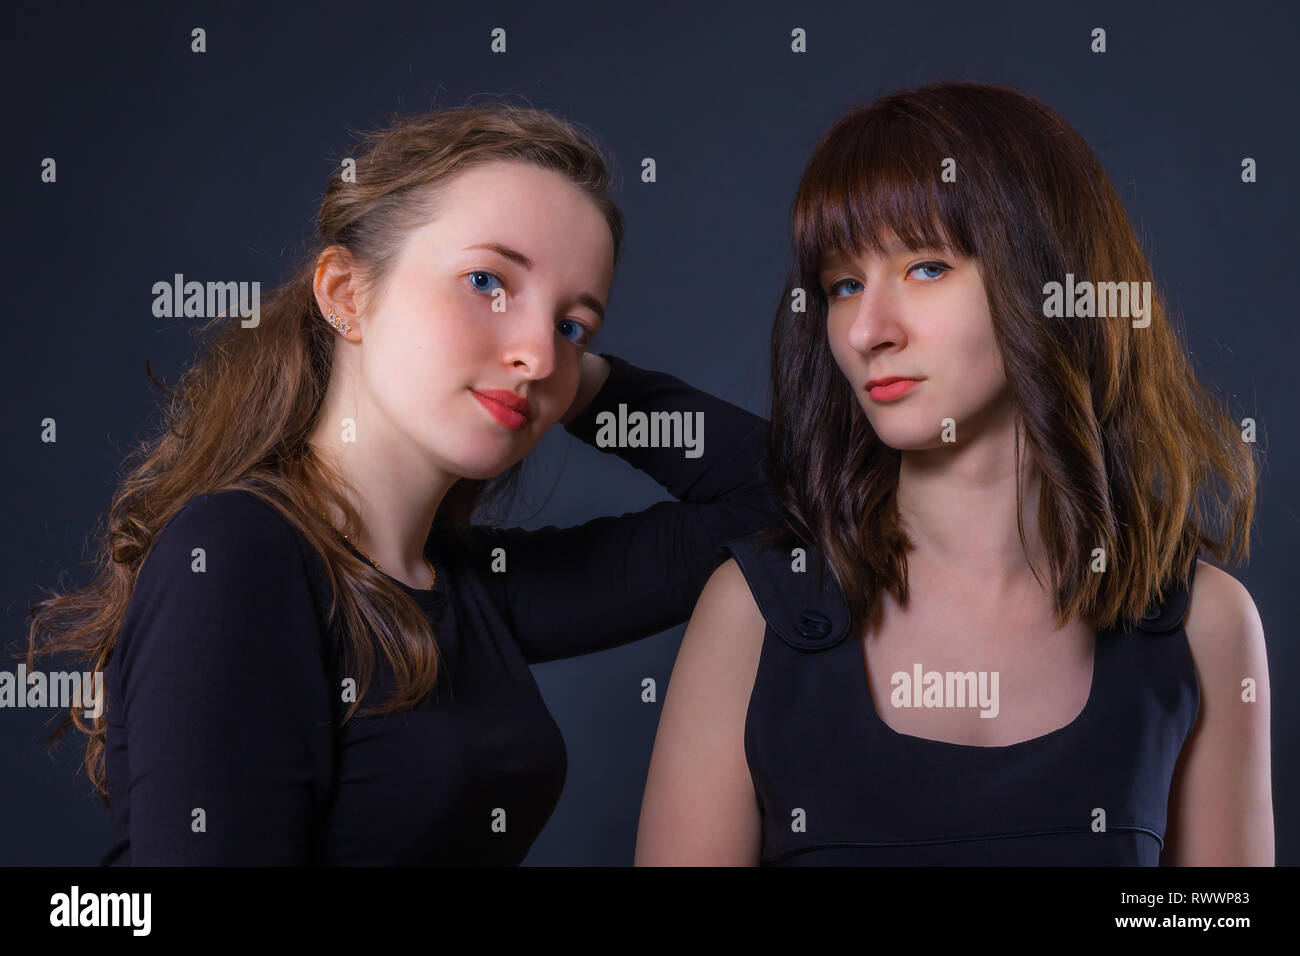 Gruppe Porträt von zwei Mädchen auf einem dunklen Hintergrund Stockfoto